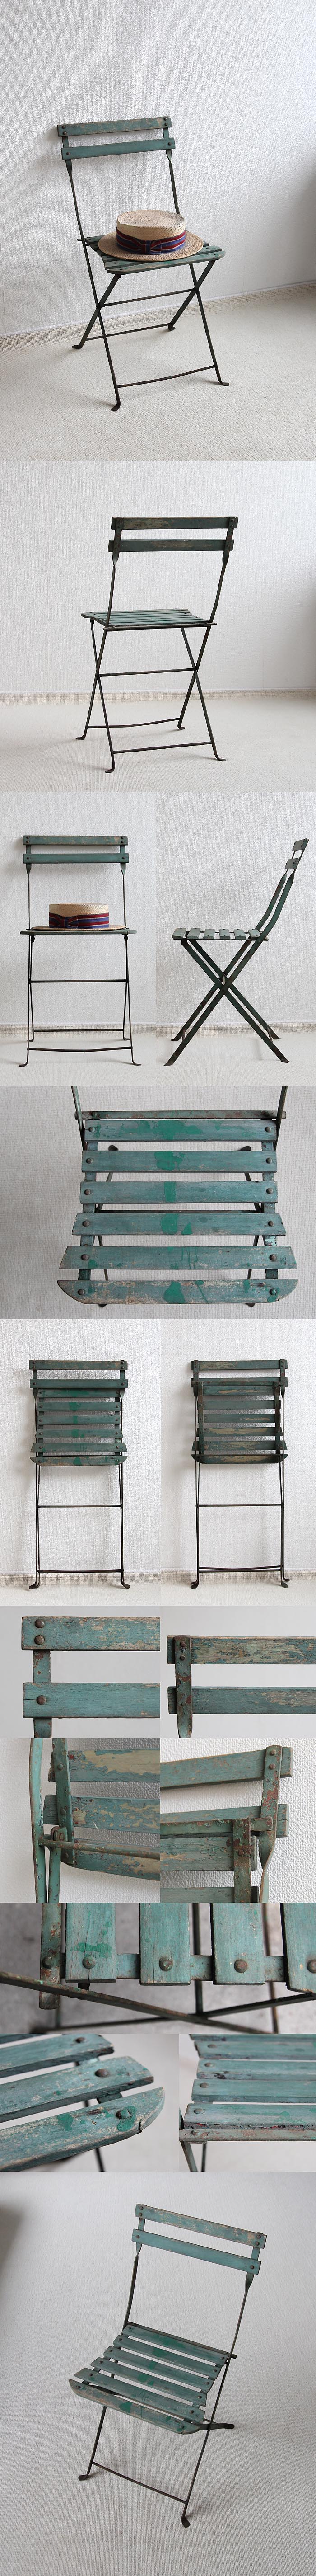 フランス アンティーク フォールディングチェア 木製椅子 折りたたみ式 ペイント家具「ガーデンチェア」P-392